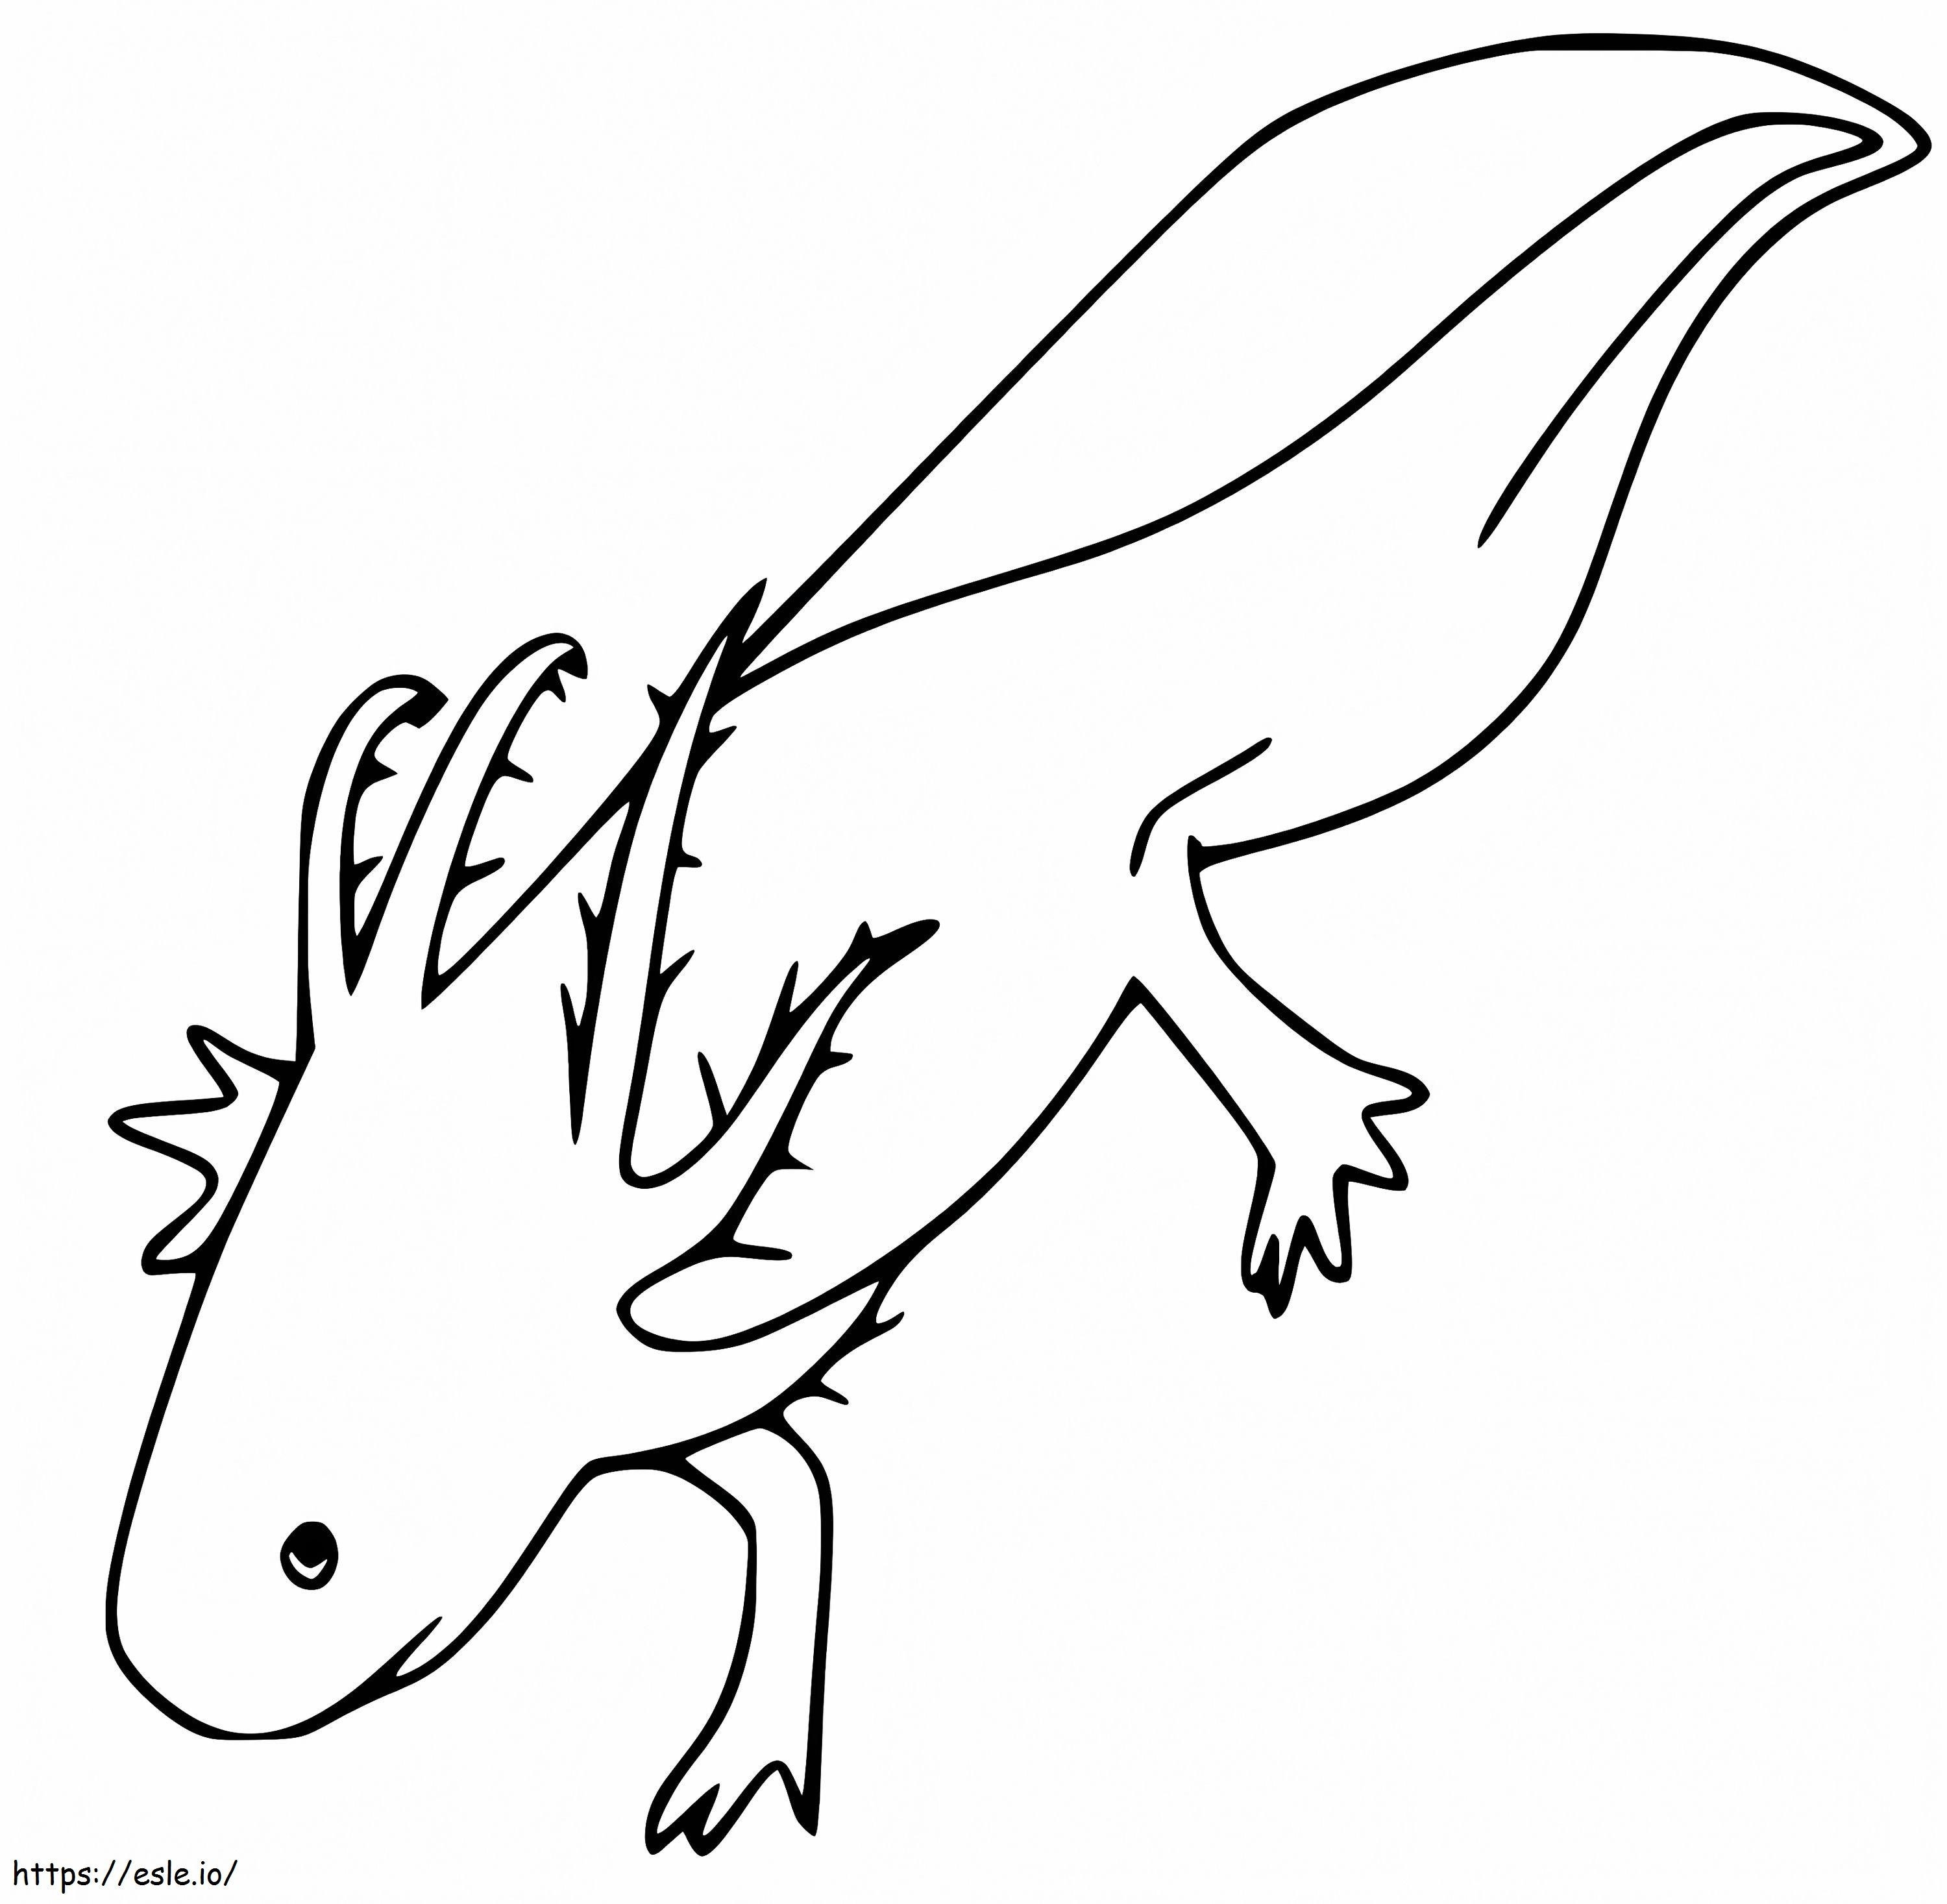 Semplice Axolotl da colorare